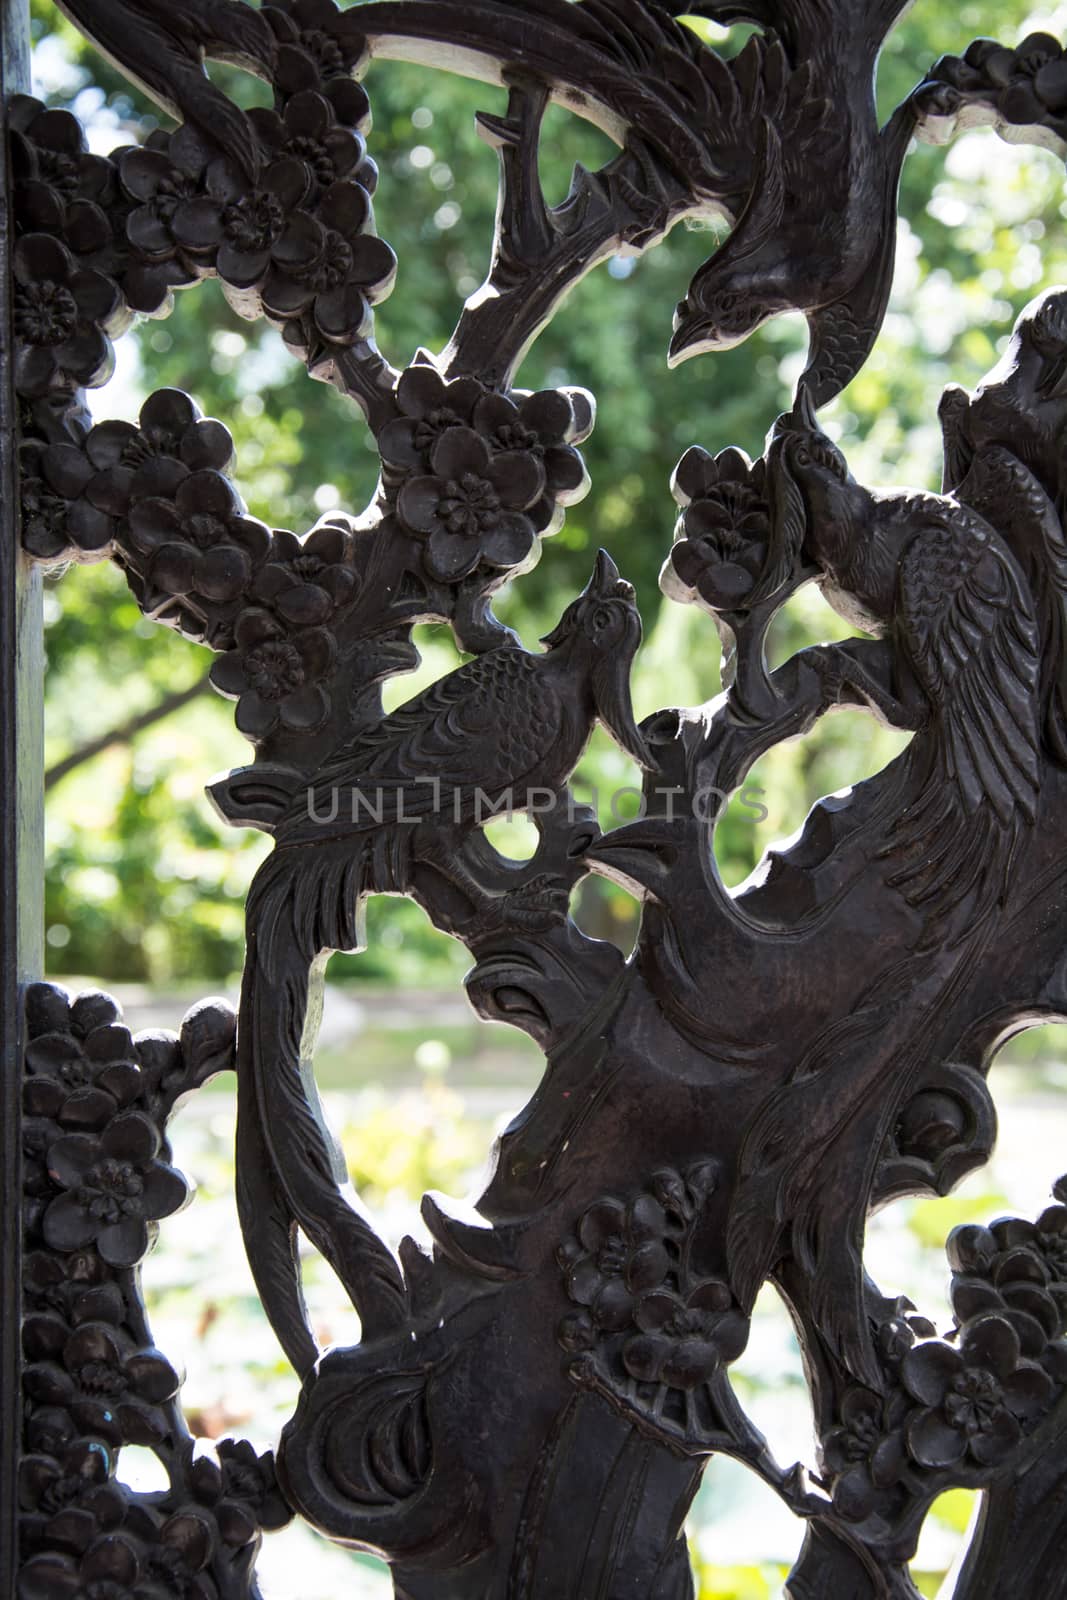 Carved wooden door detail of bird